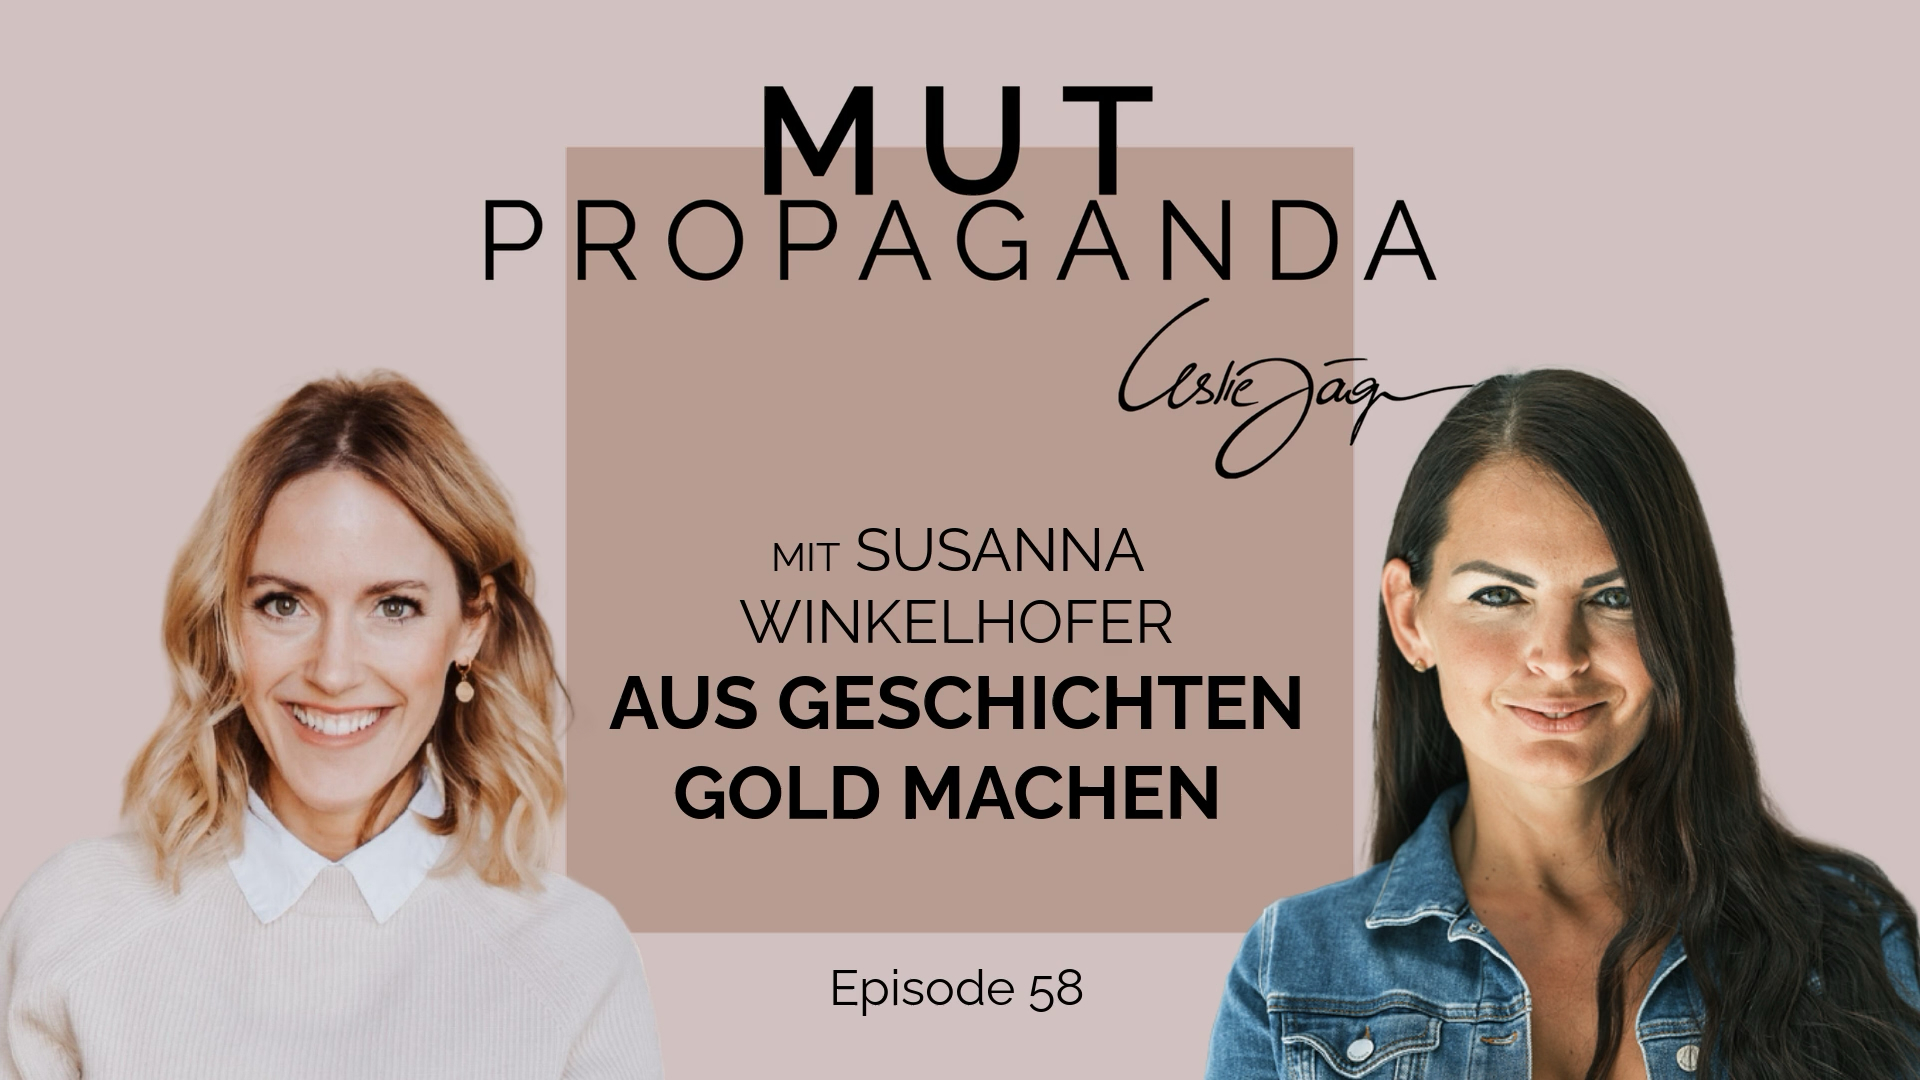 Aus Geschichten Gold machen – im Interview mit Susanna Winkelhofer